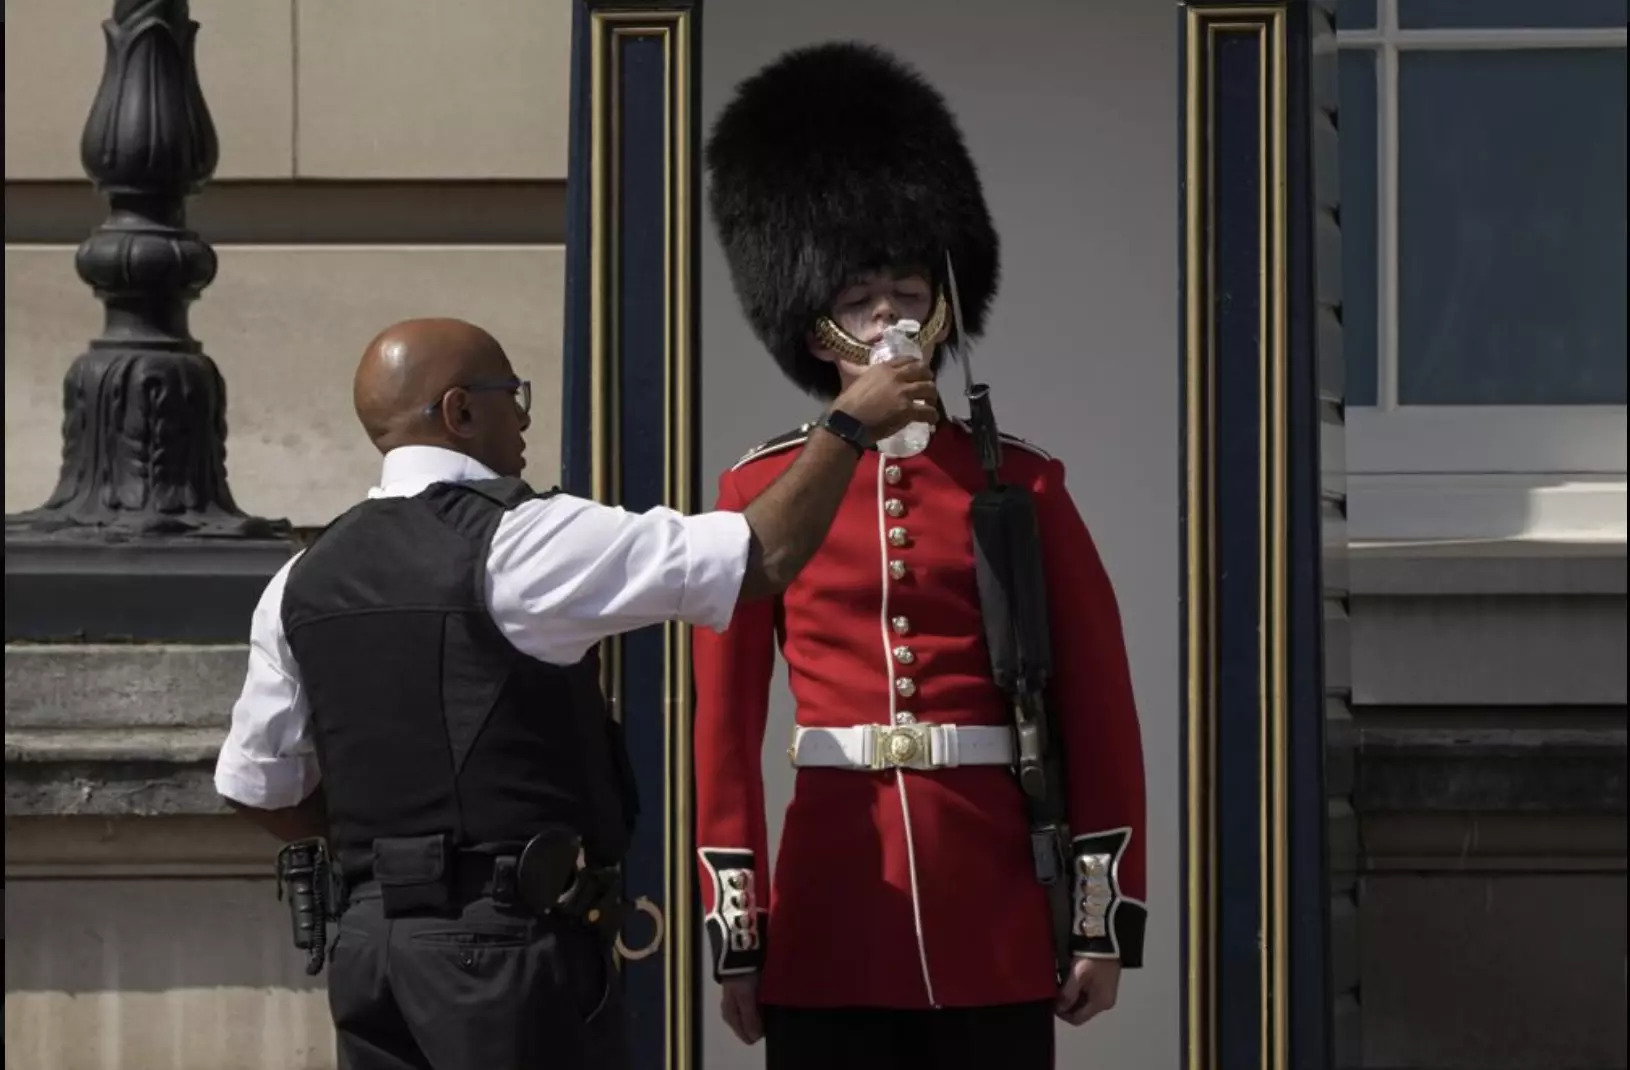 Lính canh tại Cung điện Buckingham đã phá vỡ chủ nghĩa chấp nhận nghịch cảnh như thường lệ của họ để uống từng ngụm nước. Ảnh: AP